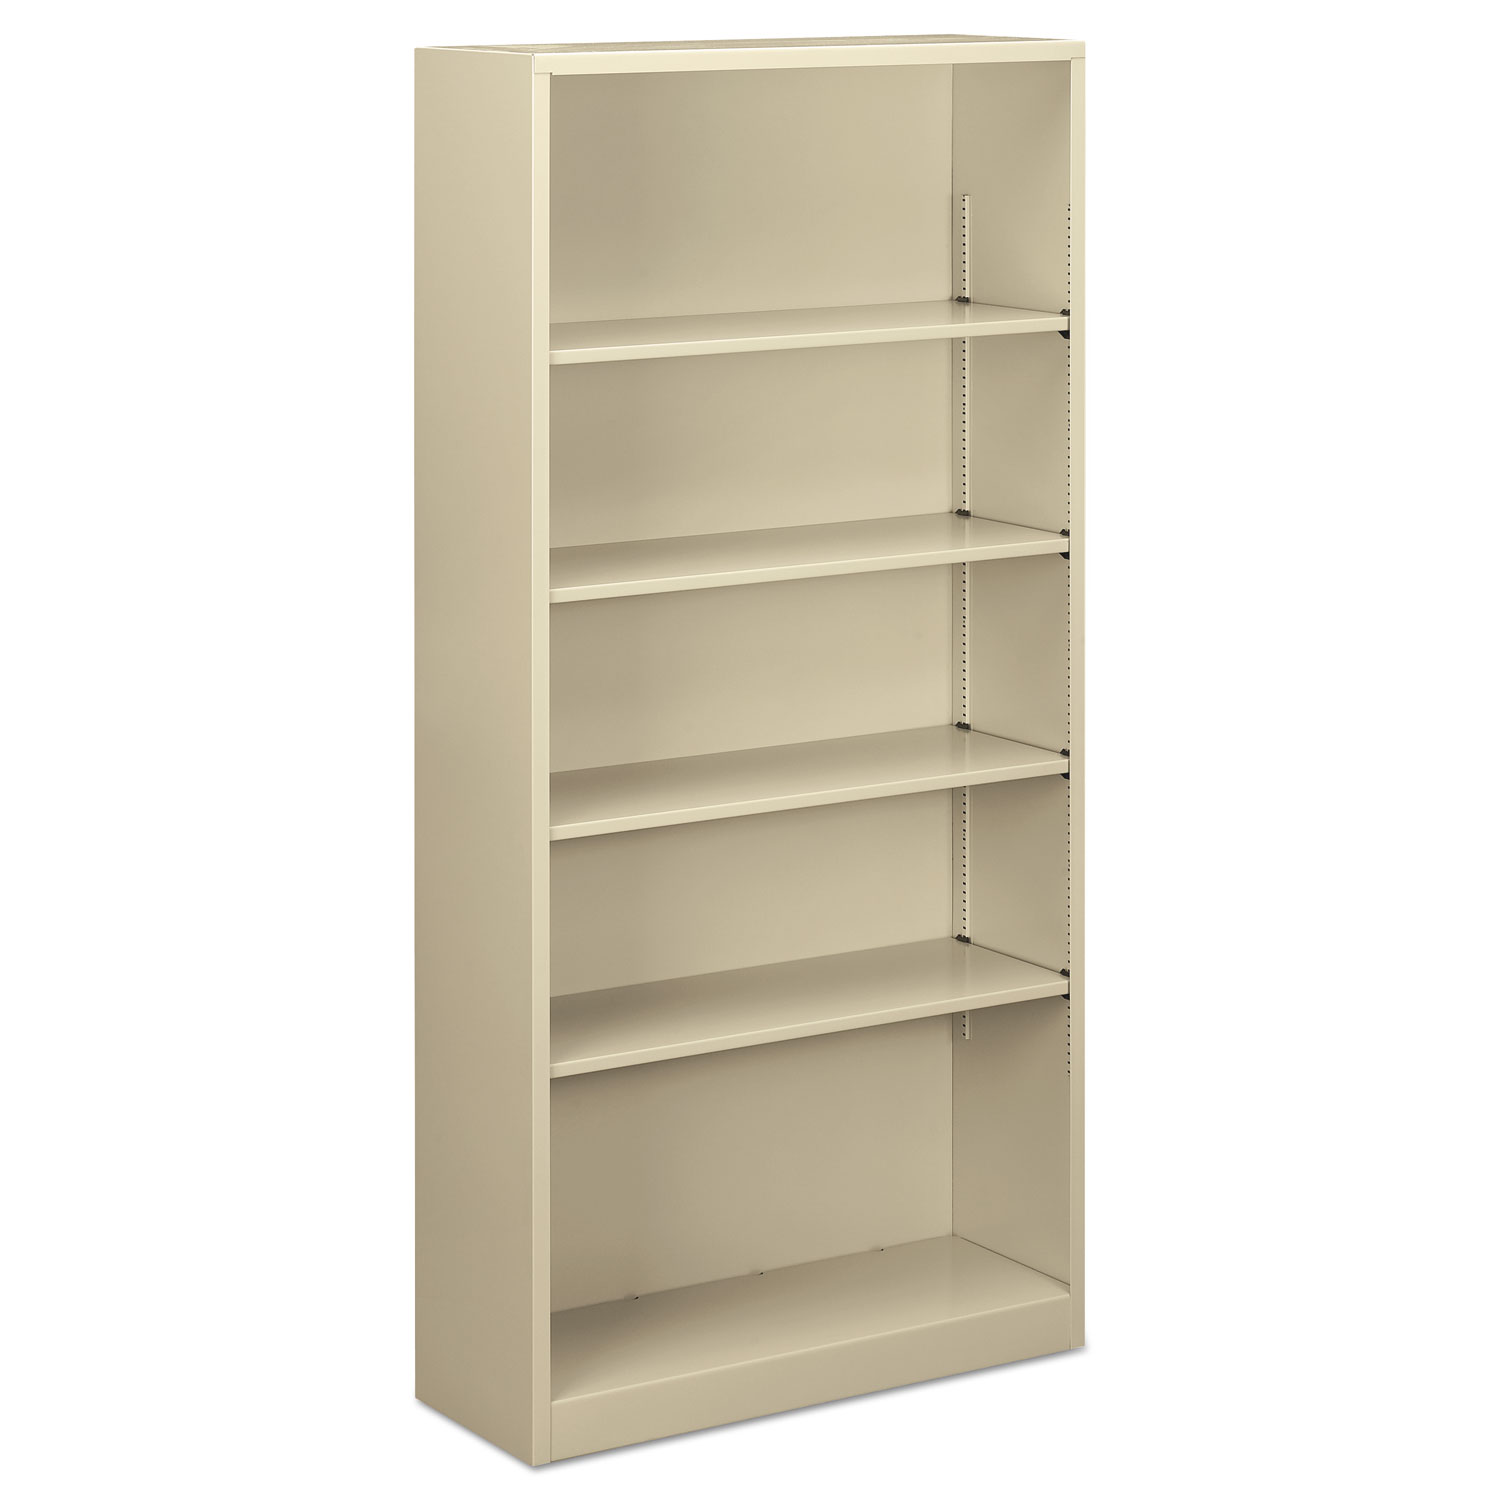  Alera ALEBCM57135PY Steel Bookcase, 5-Shelf, 34.5w x 12.63d x 71h, Putty (ALEBCM57135PY) 